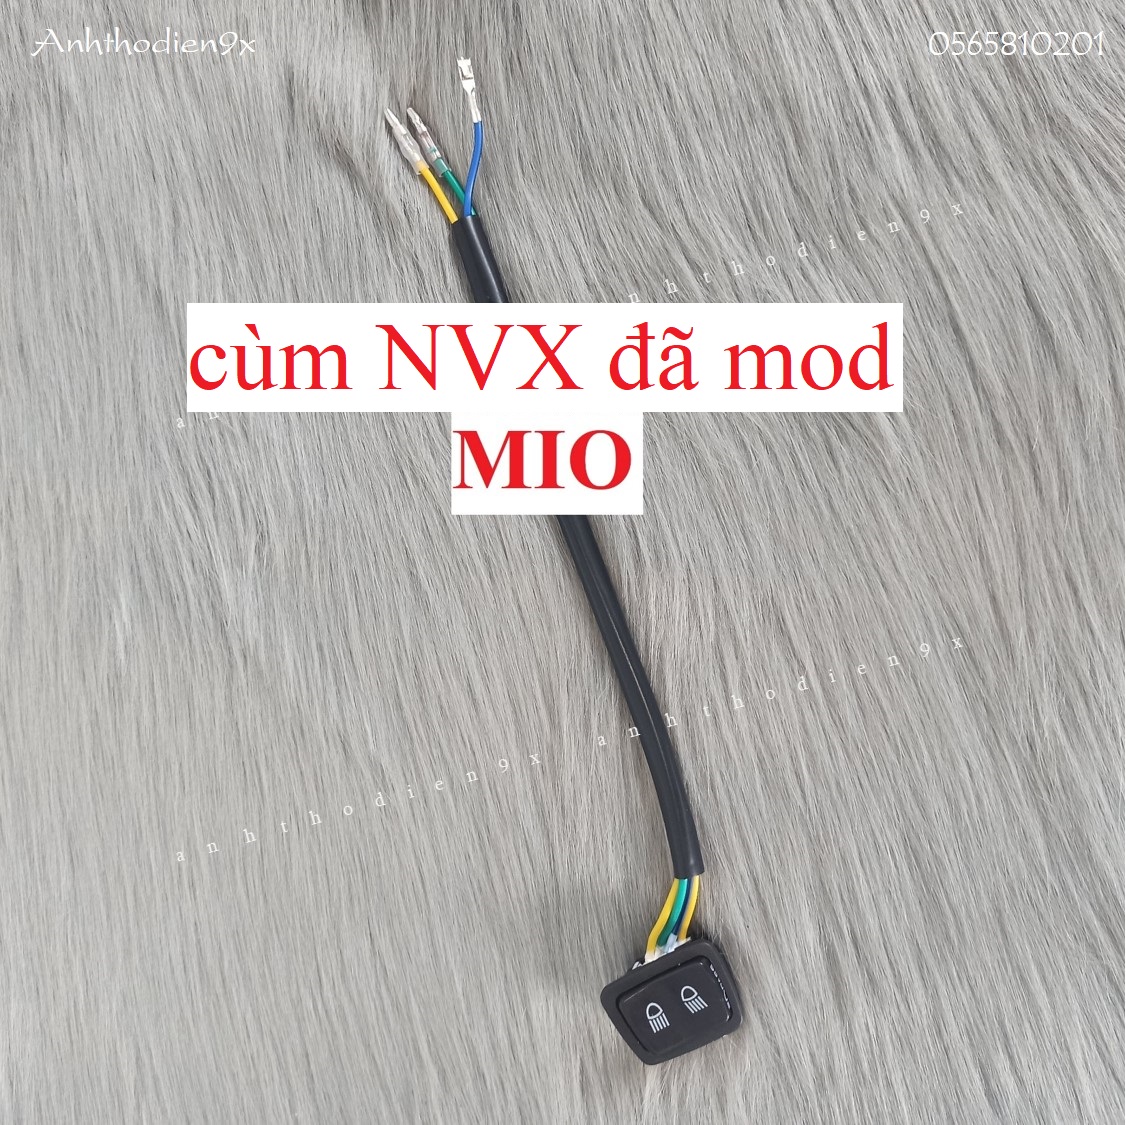 [Chỉ 1nút ko gồm cùm] Nút Passing Gắn Cho Cùm NVX v1, Cùm NVX Mod Ex135, Mio